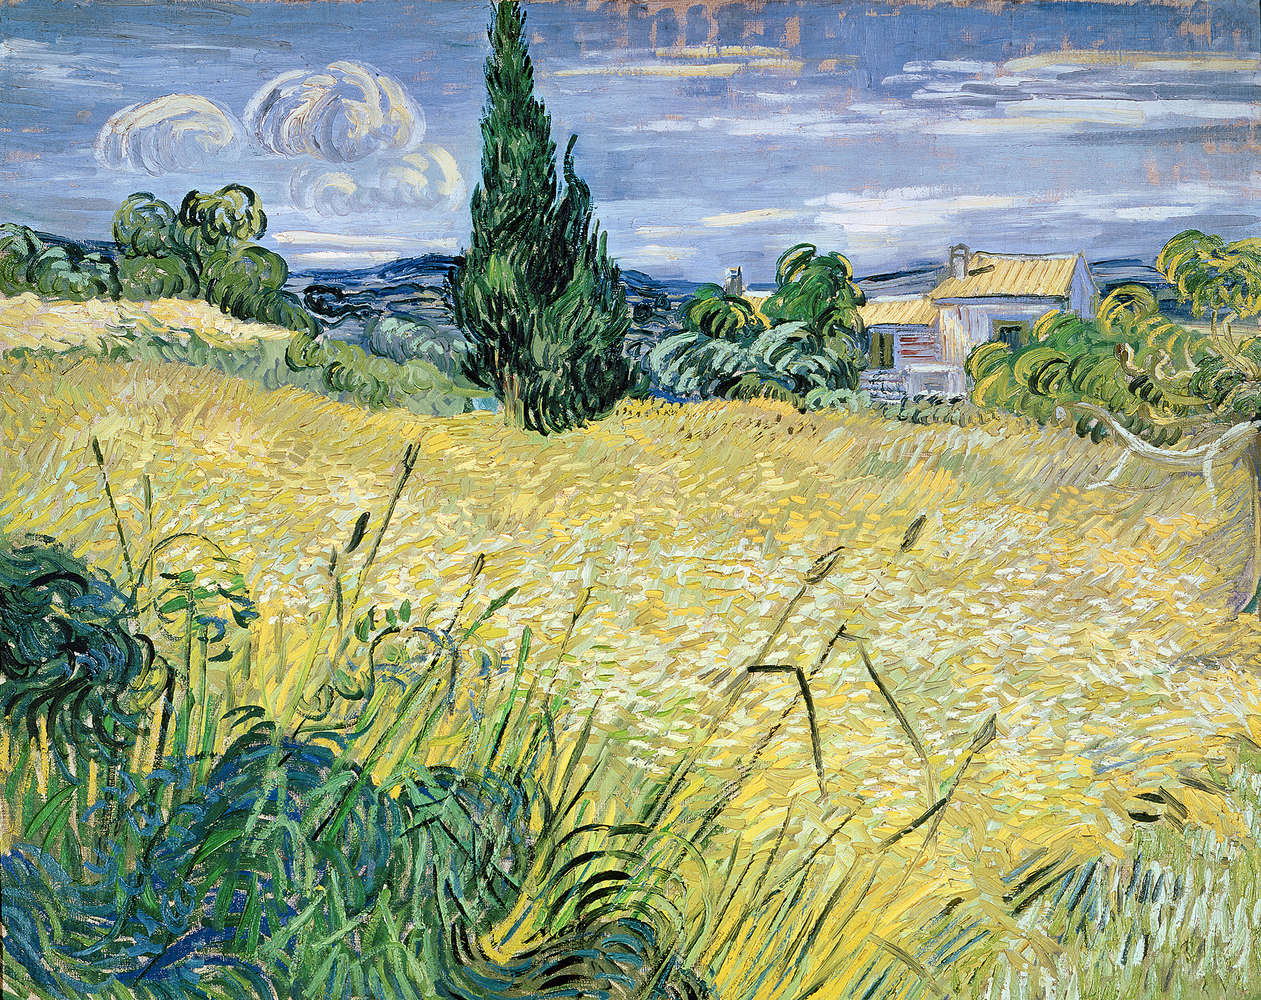             Fototapete "Grünes Weizenfeld mit Zypresse" von Vincent van Gogh
        